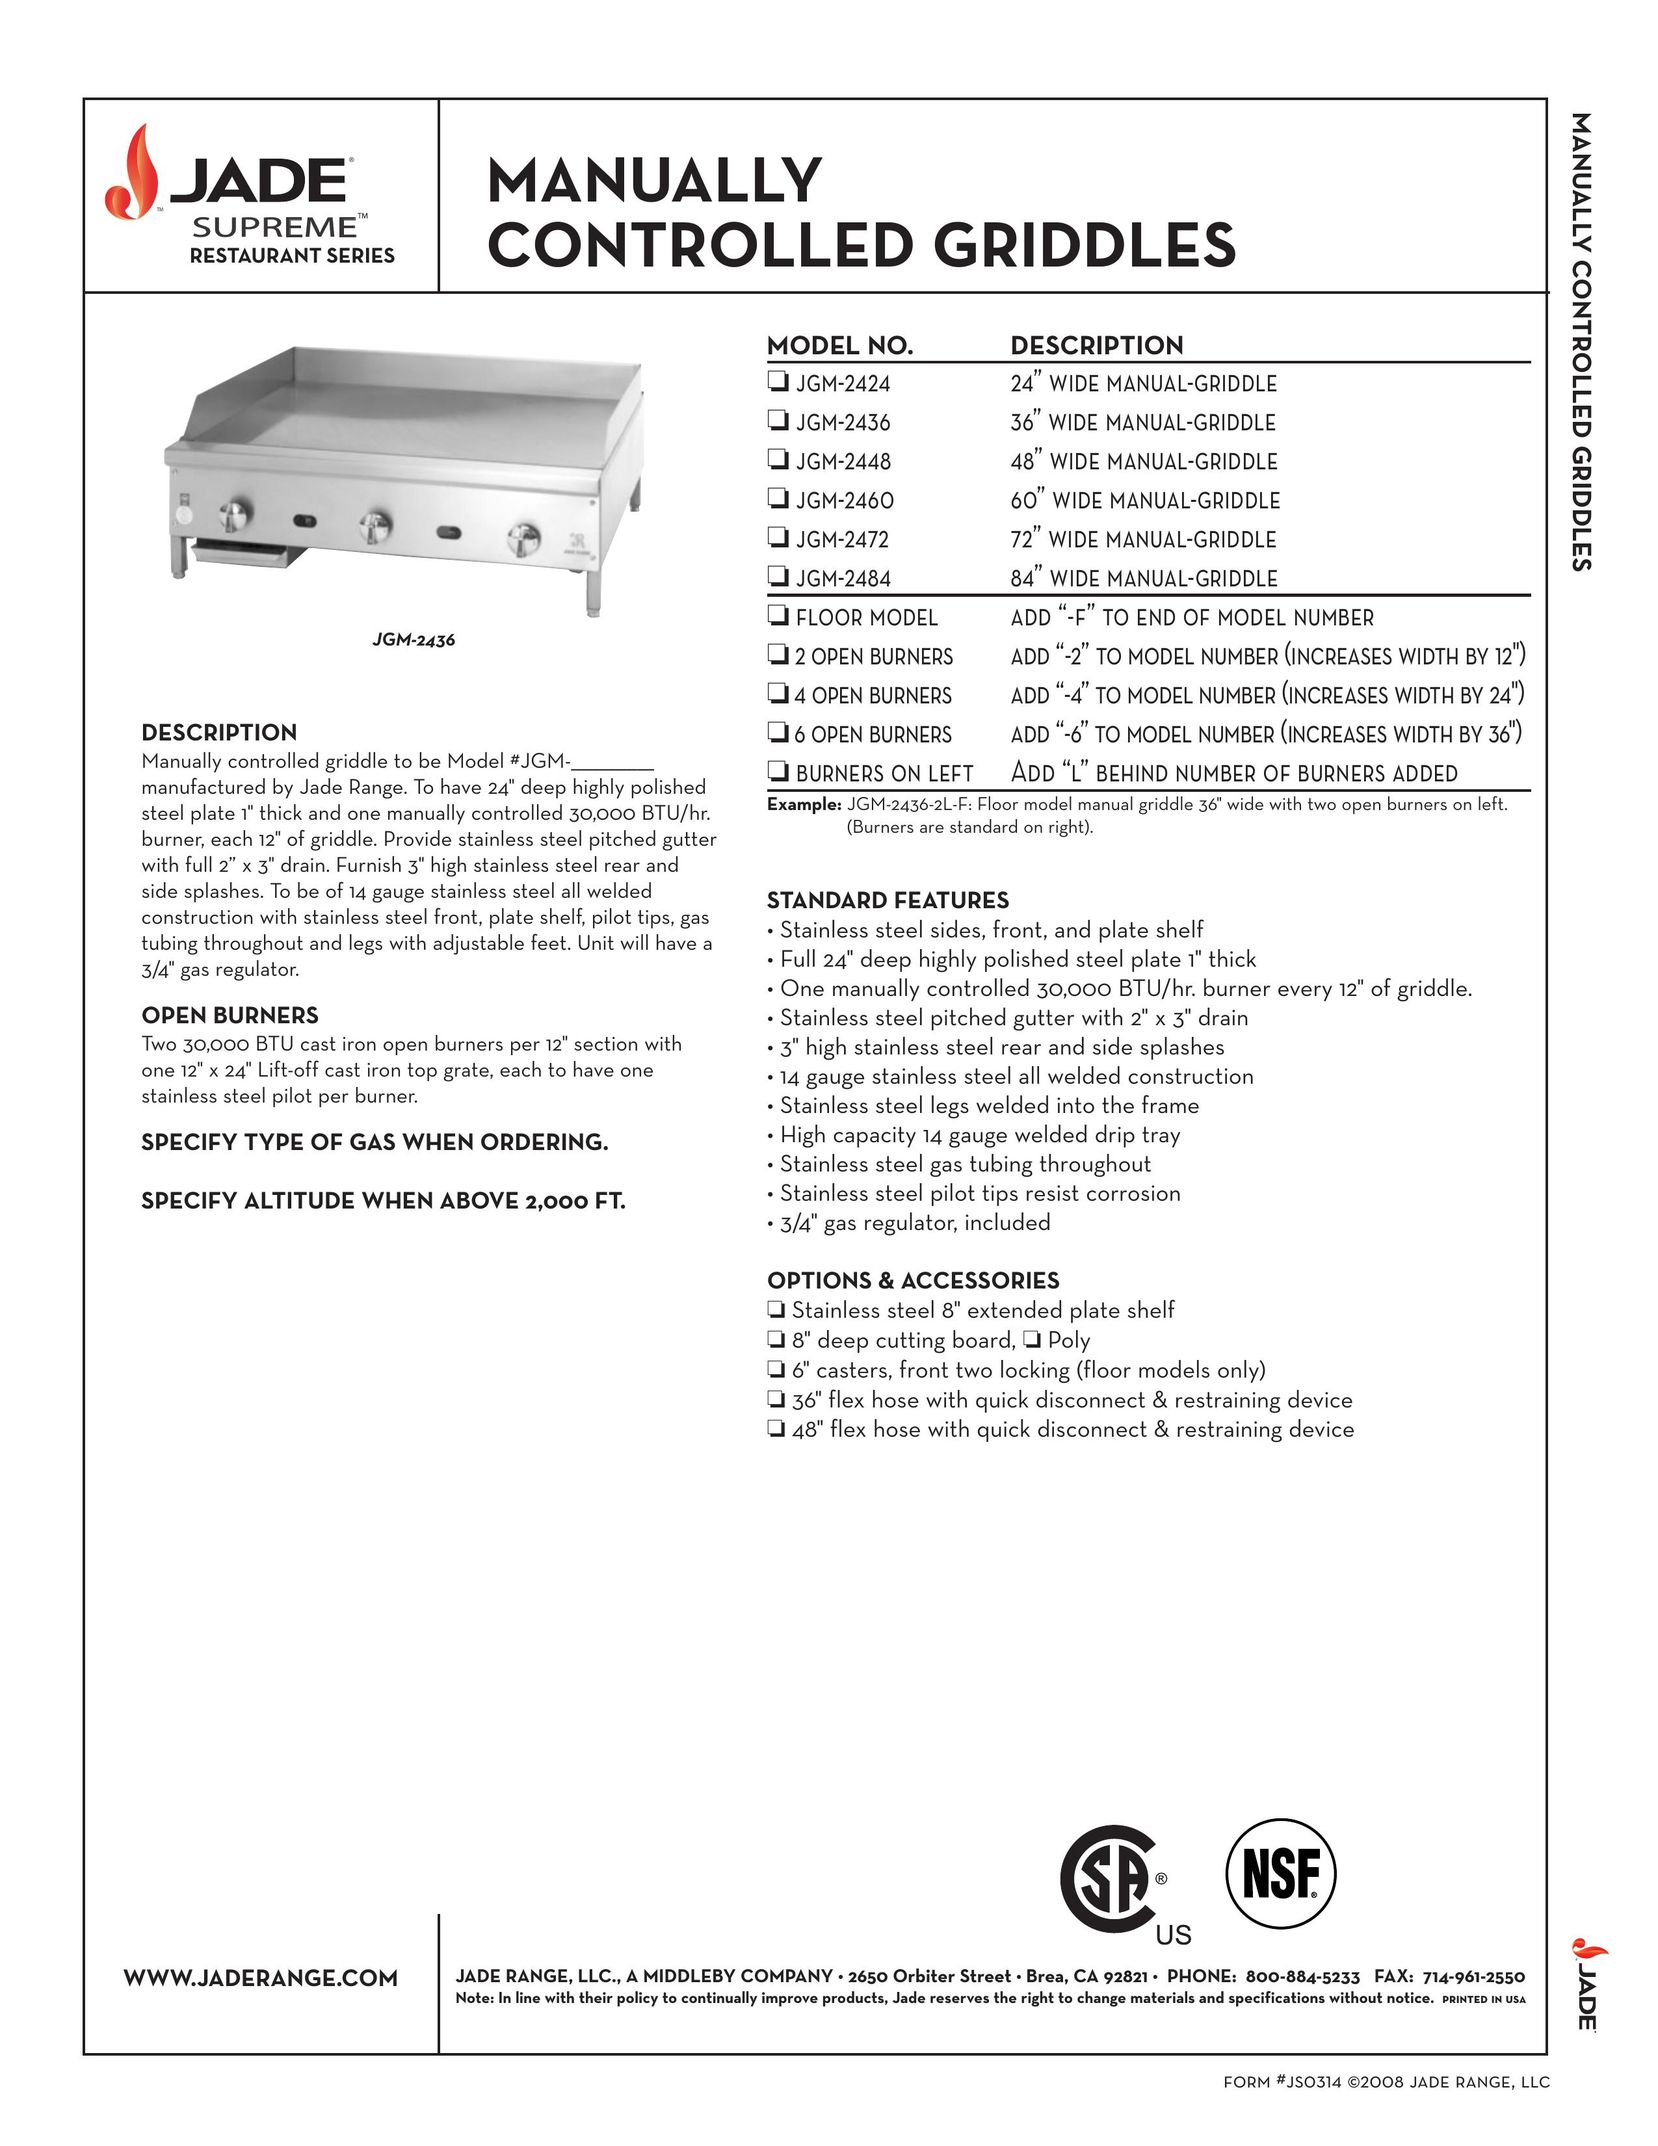 Jade Range JGM-2460 Griddle User Manual